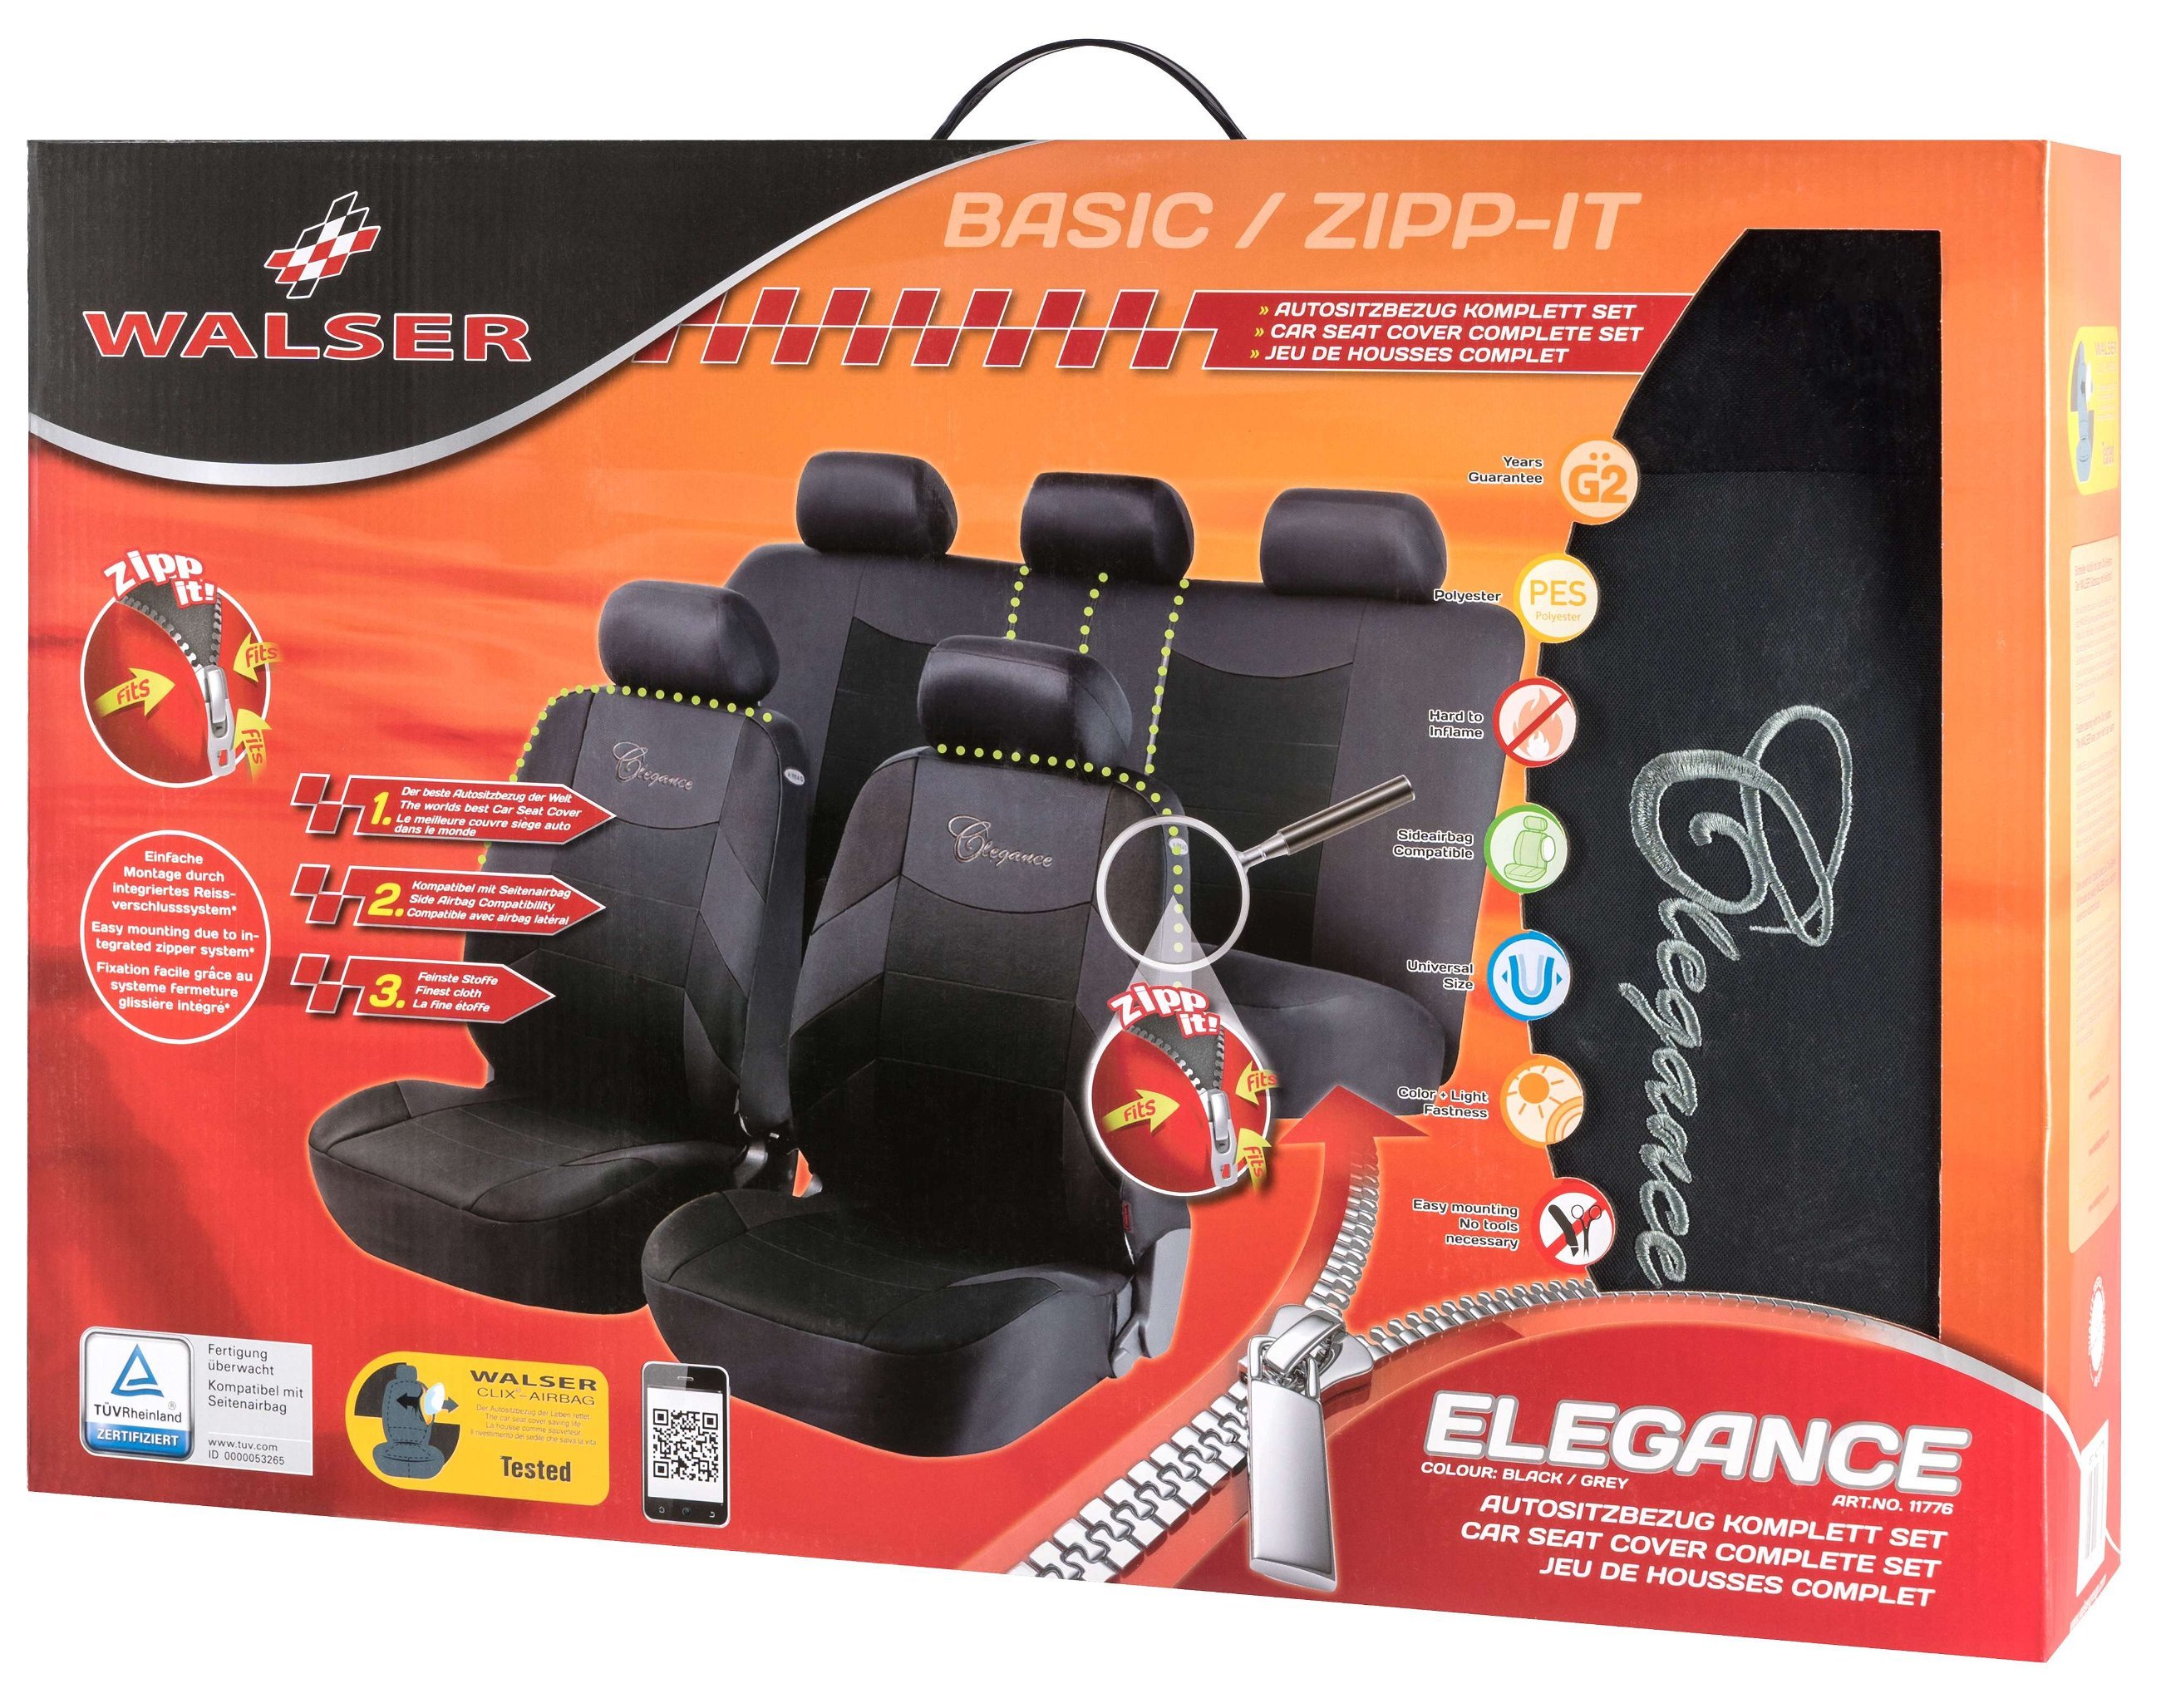 Auto stoelbeschermer Elegance met Zipper ZIPP-IT, Autostoelhoes set, 2 stoelbeschermer voor voorstoel, 1 stoelbeschermer voor achterbank zwart/grijs